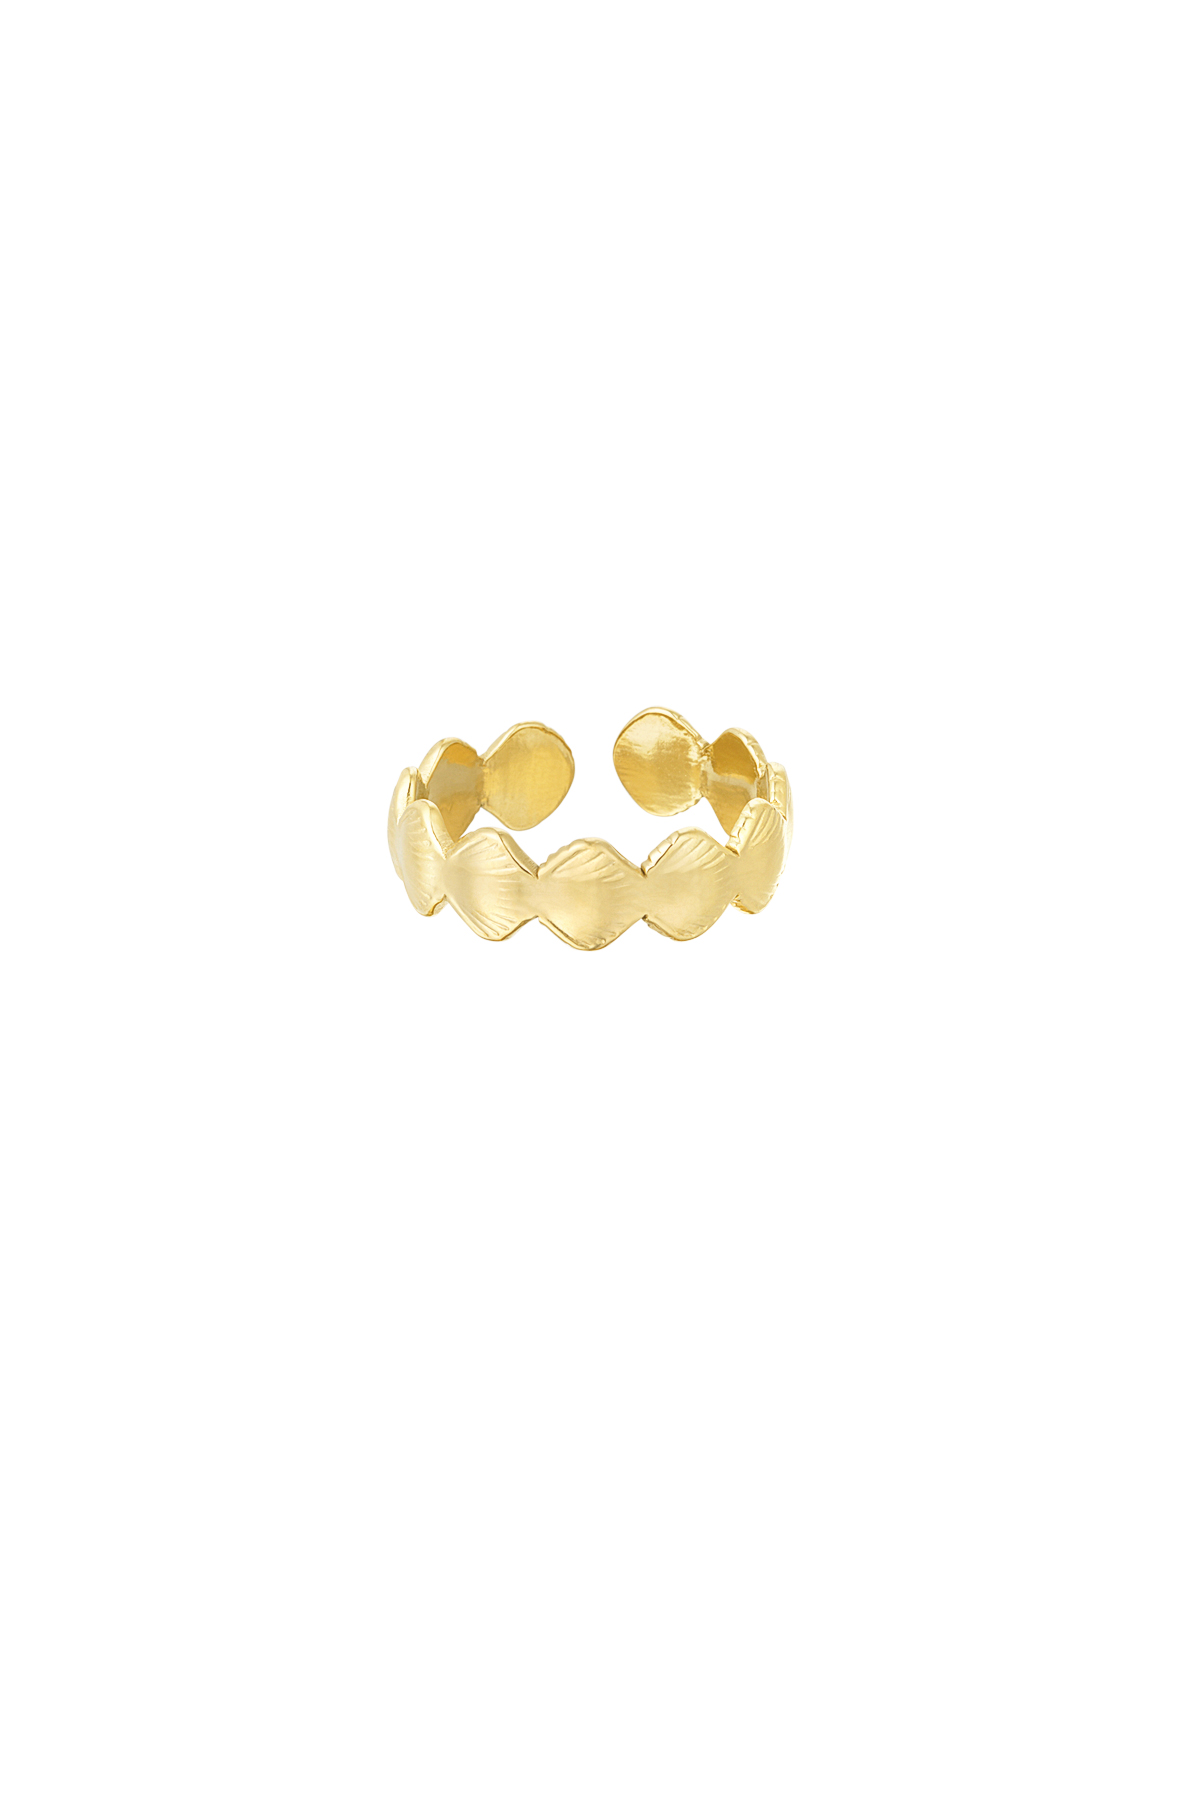 Ring Muschelseele - gold h5 